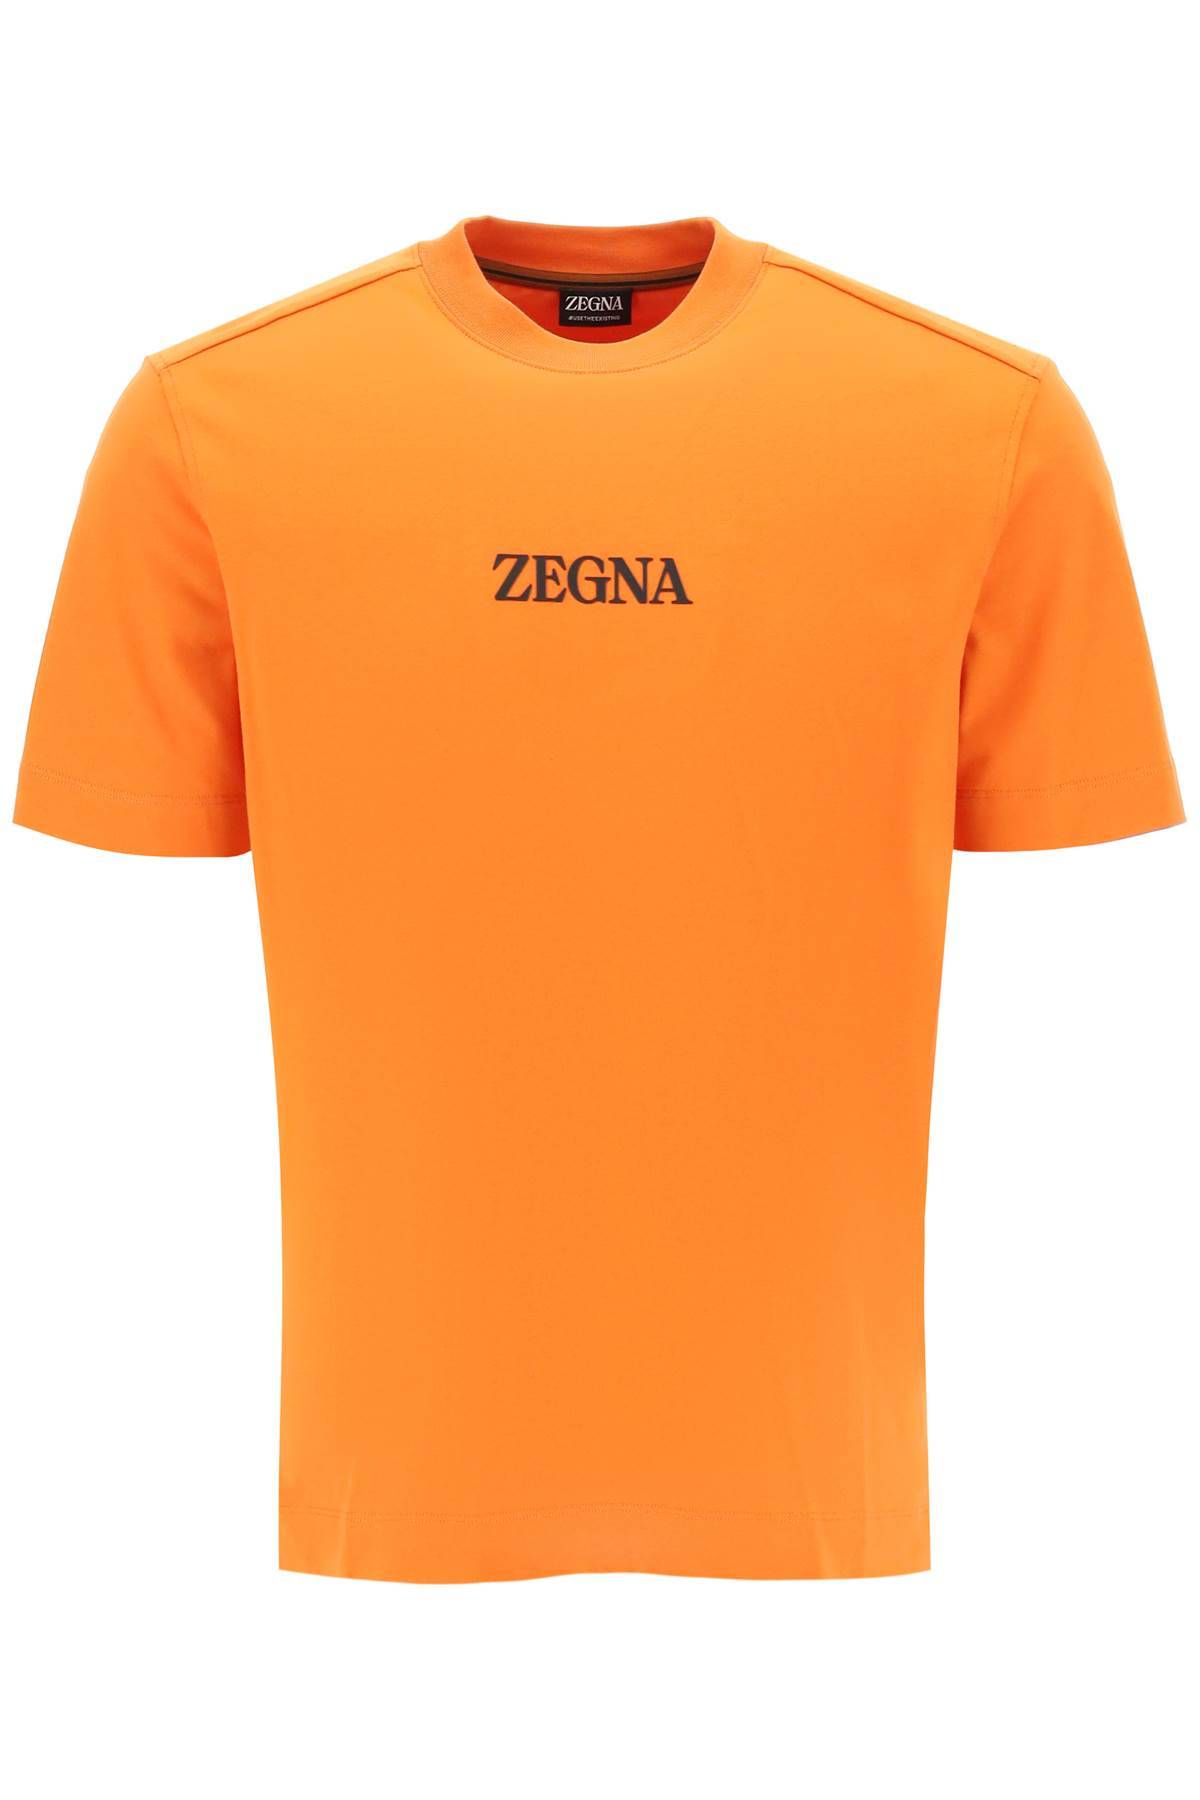 zegna ZEGNA crewneck t-shirt